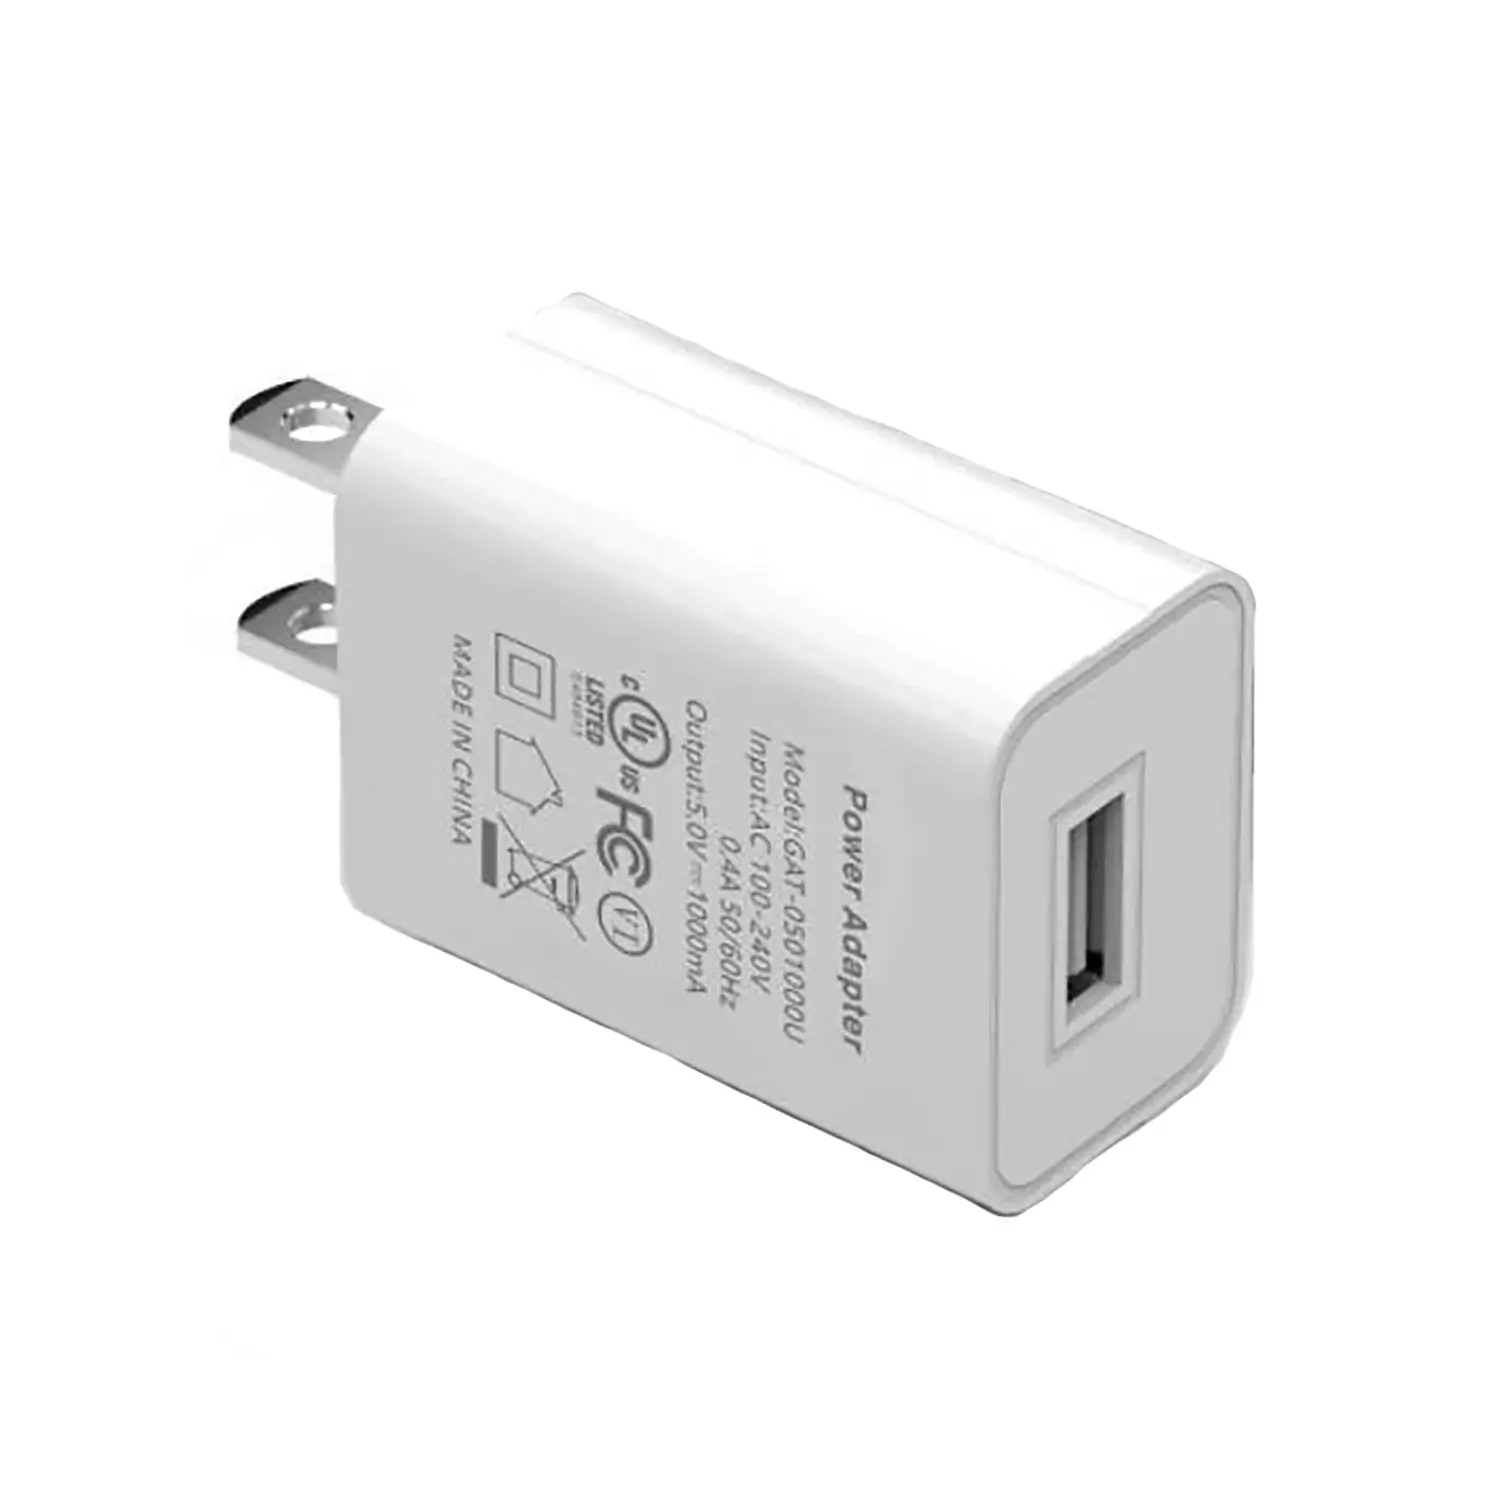 Chargeur adaptateur secteur USB 5V1A